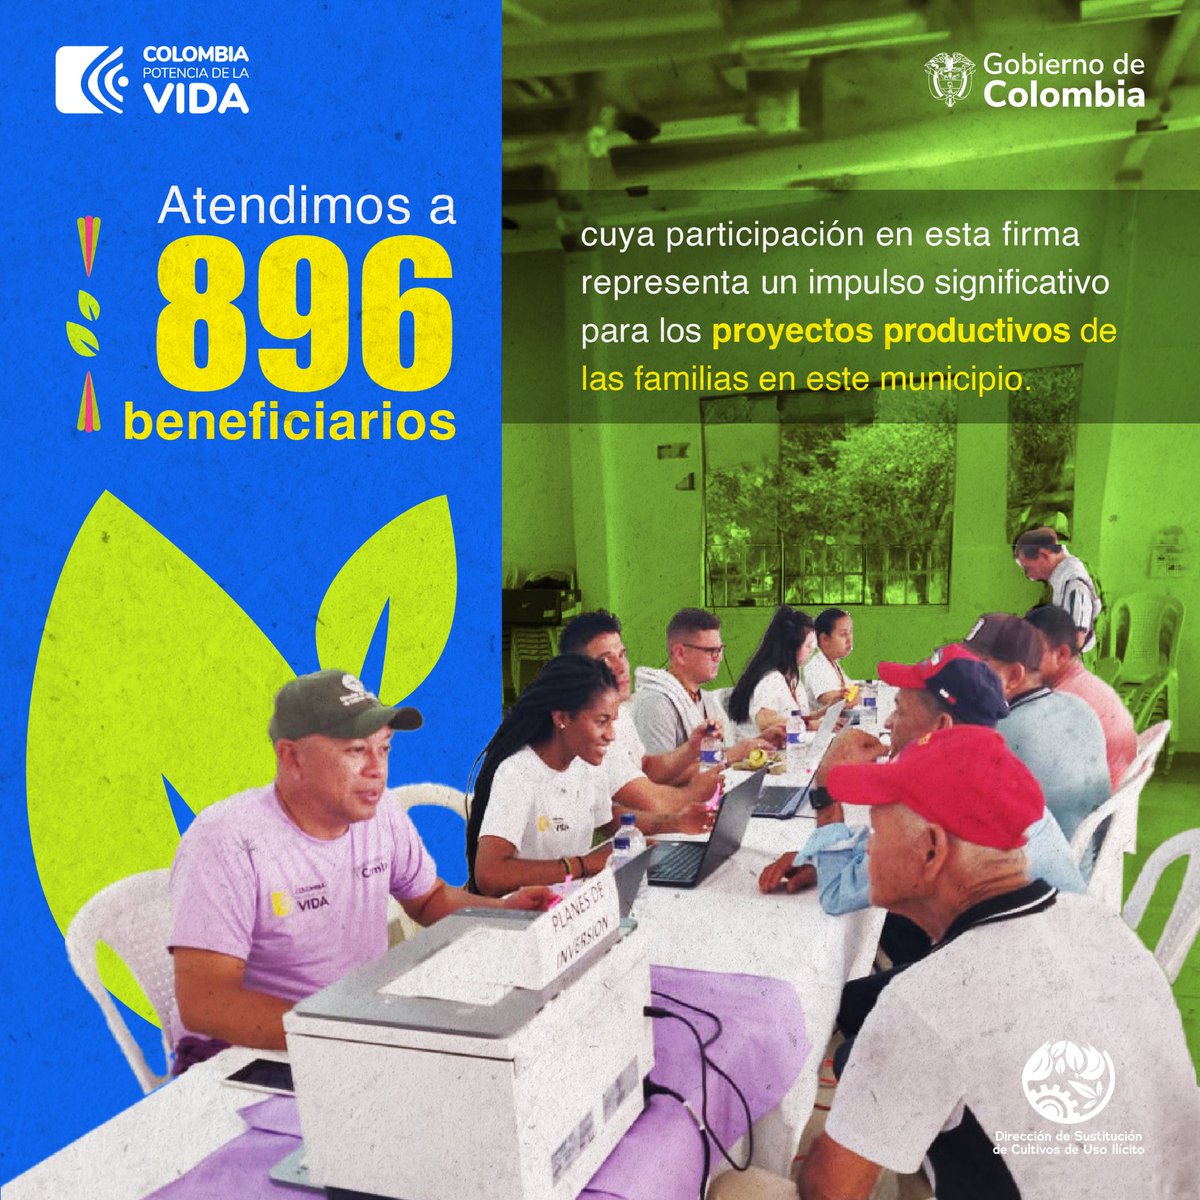 En las jornadas de levantamiento de planes de inversión en San Pablo, Bolívar, se atendieron a 896 beneficiarios. Este compromiso representa un paso crucial hacia la sustitución de cultivos de uso ilícito y hacia la consolidación de economías locales sostenibles.